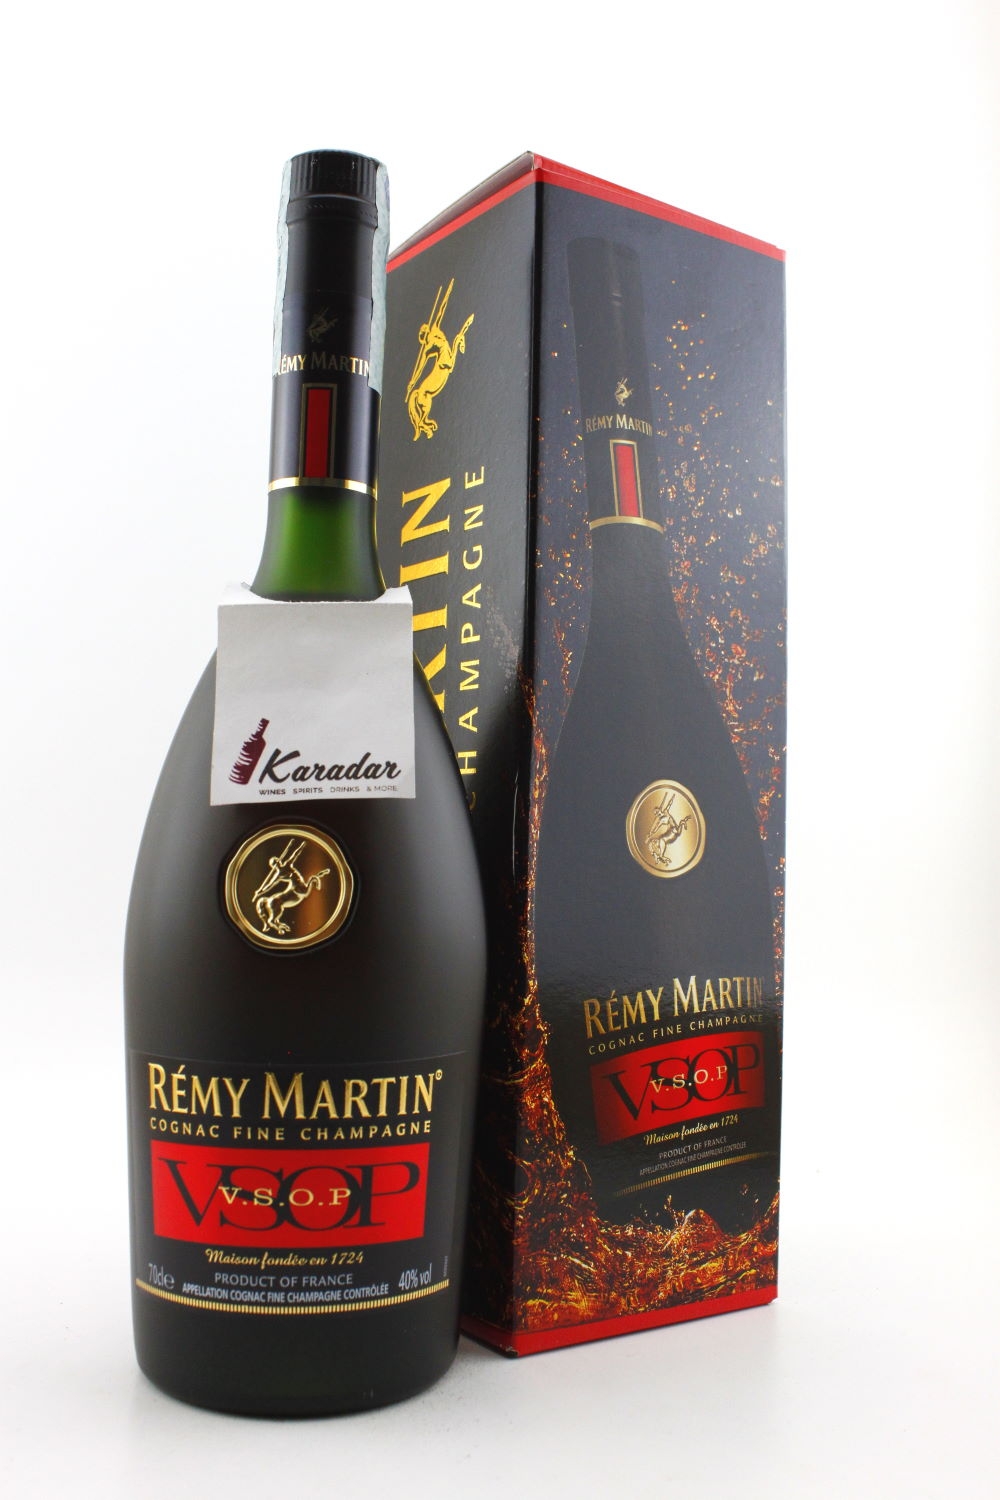 Remy Martin Cognac Fine Champagne V.S.O.P. 40% vol. Cognac